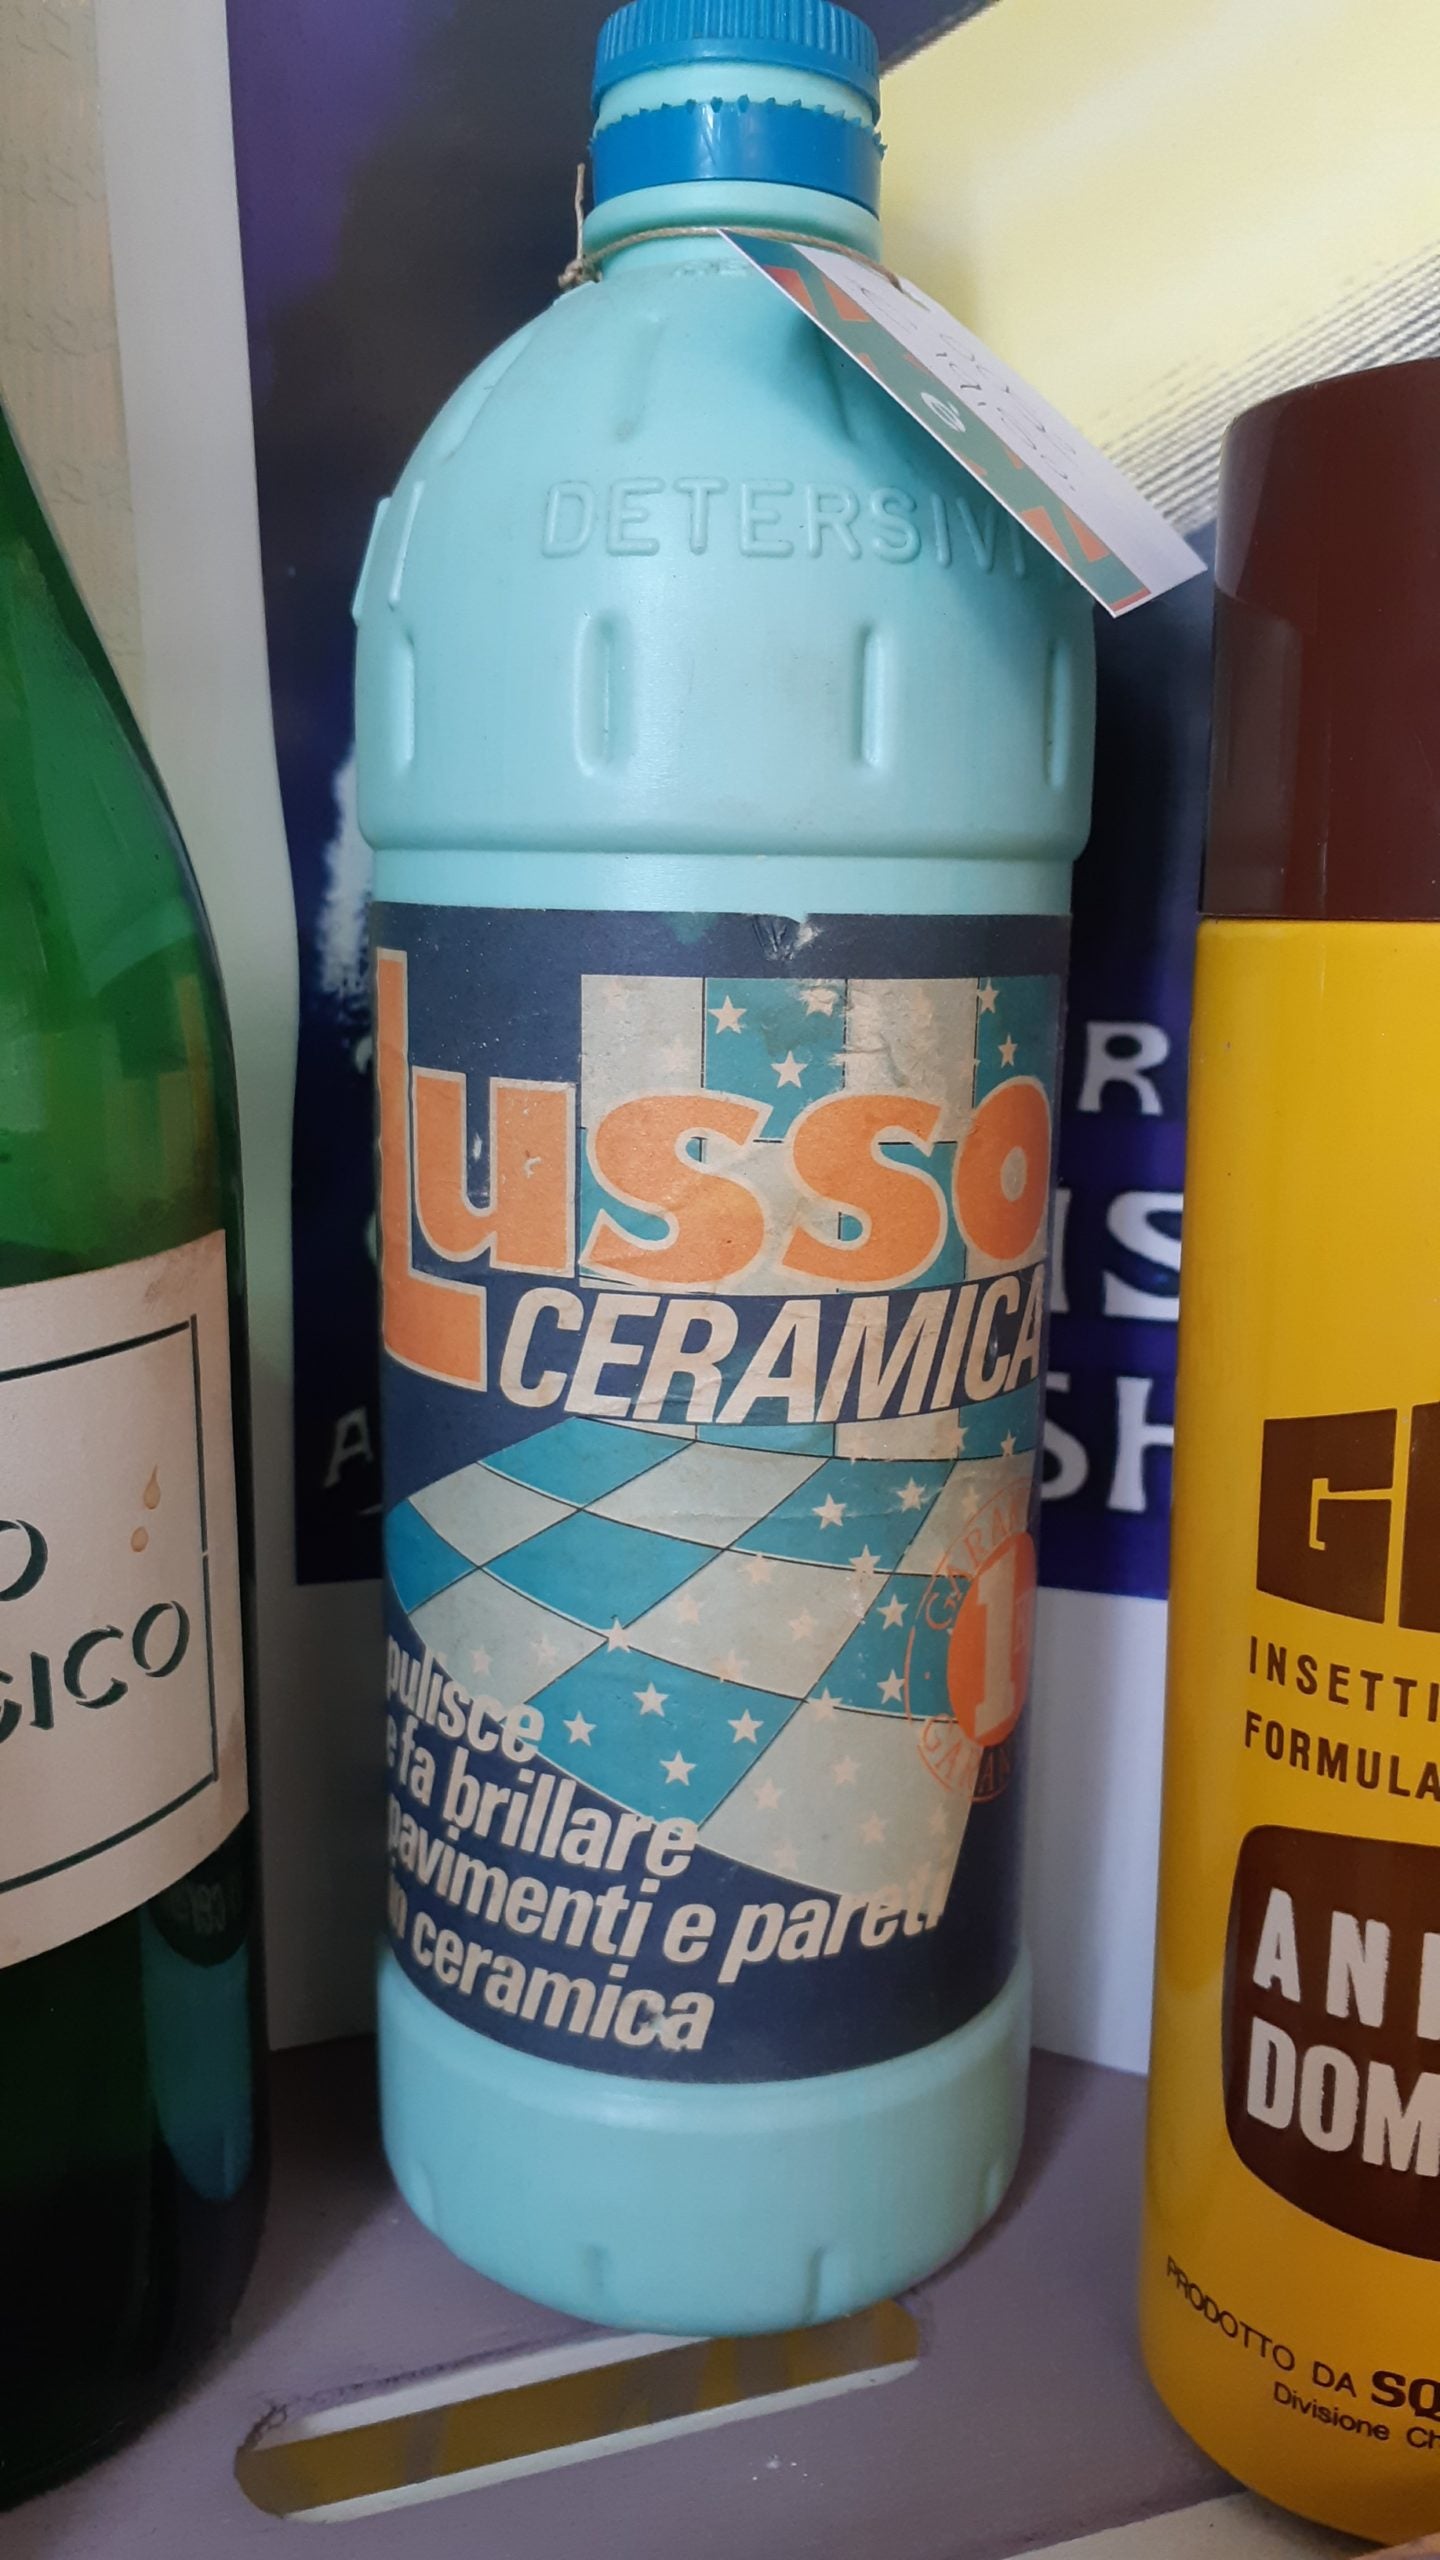 Detergente per pavimenti in ceramica "Lusso" - NONèdabuttare